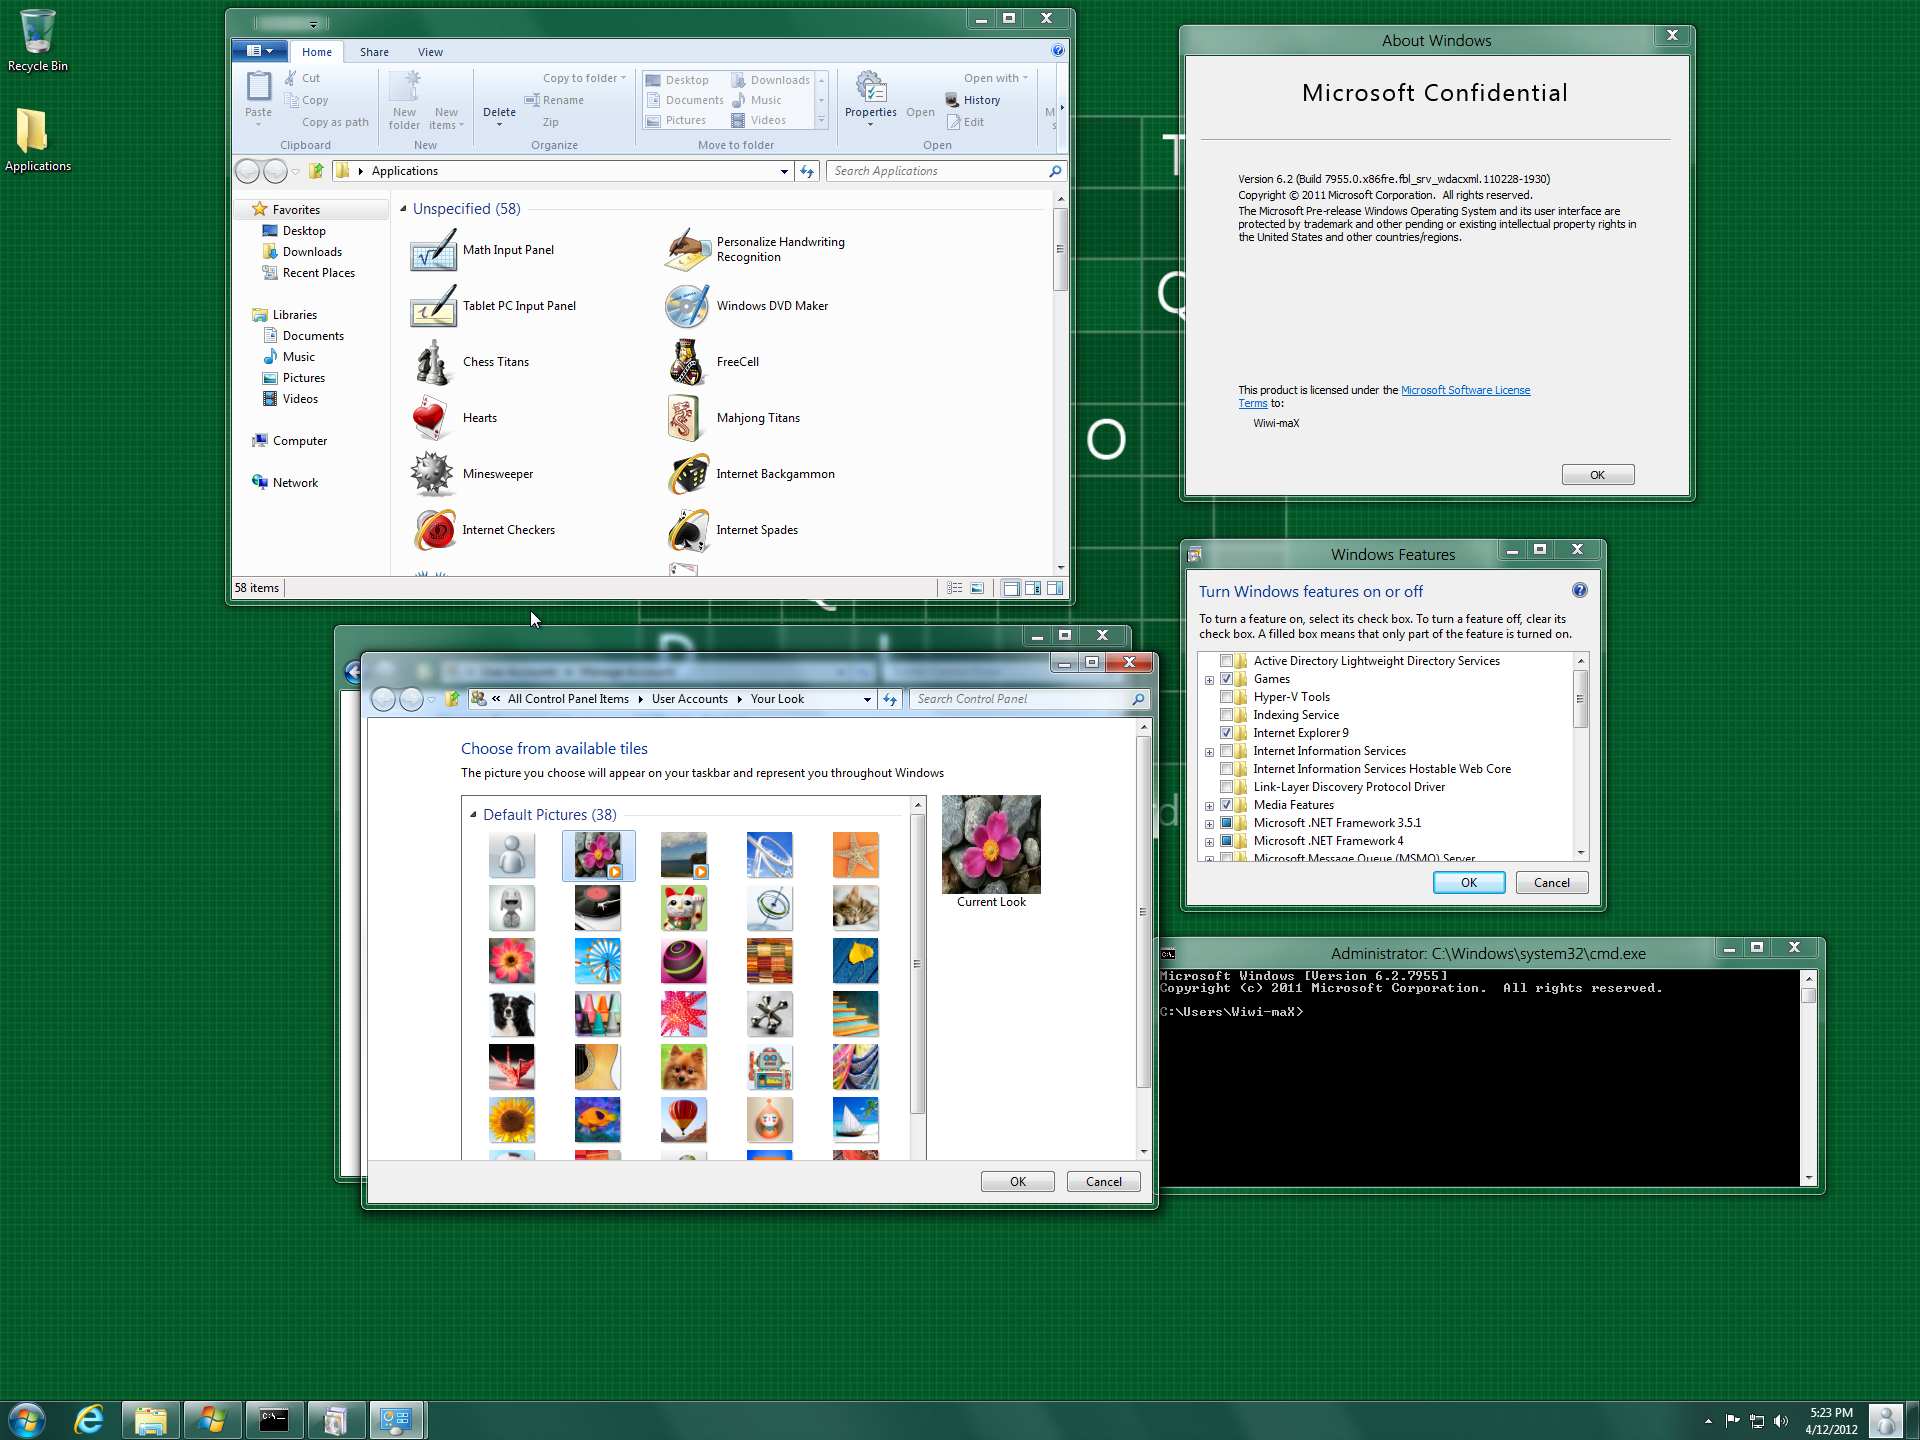 Windows 8 Build 7955 Unlocked! - BetaArchive